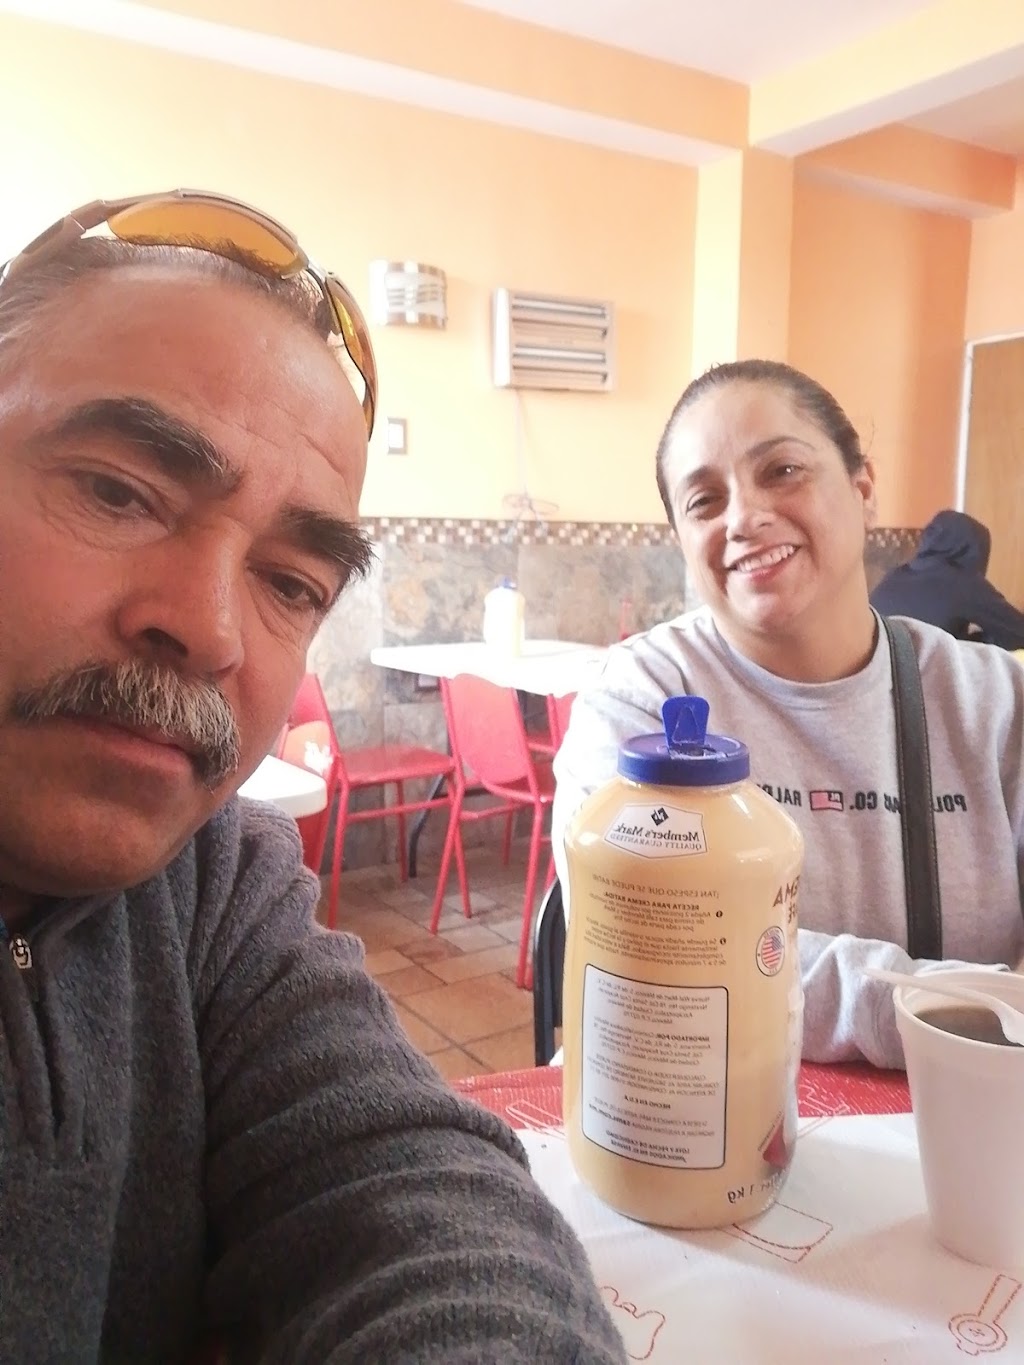 Burritos El Lazado | Altamira s/n, Praderas del Sur, 32575 Cd Juárez, Chih., Mexico | Phone: 656 258 1714